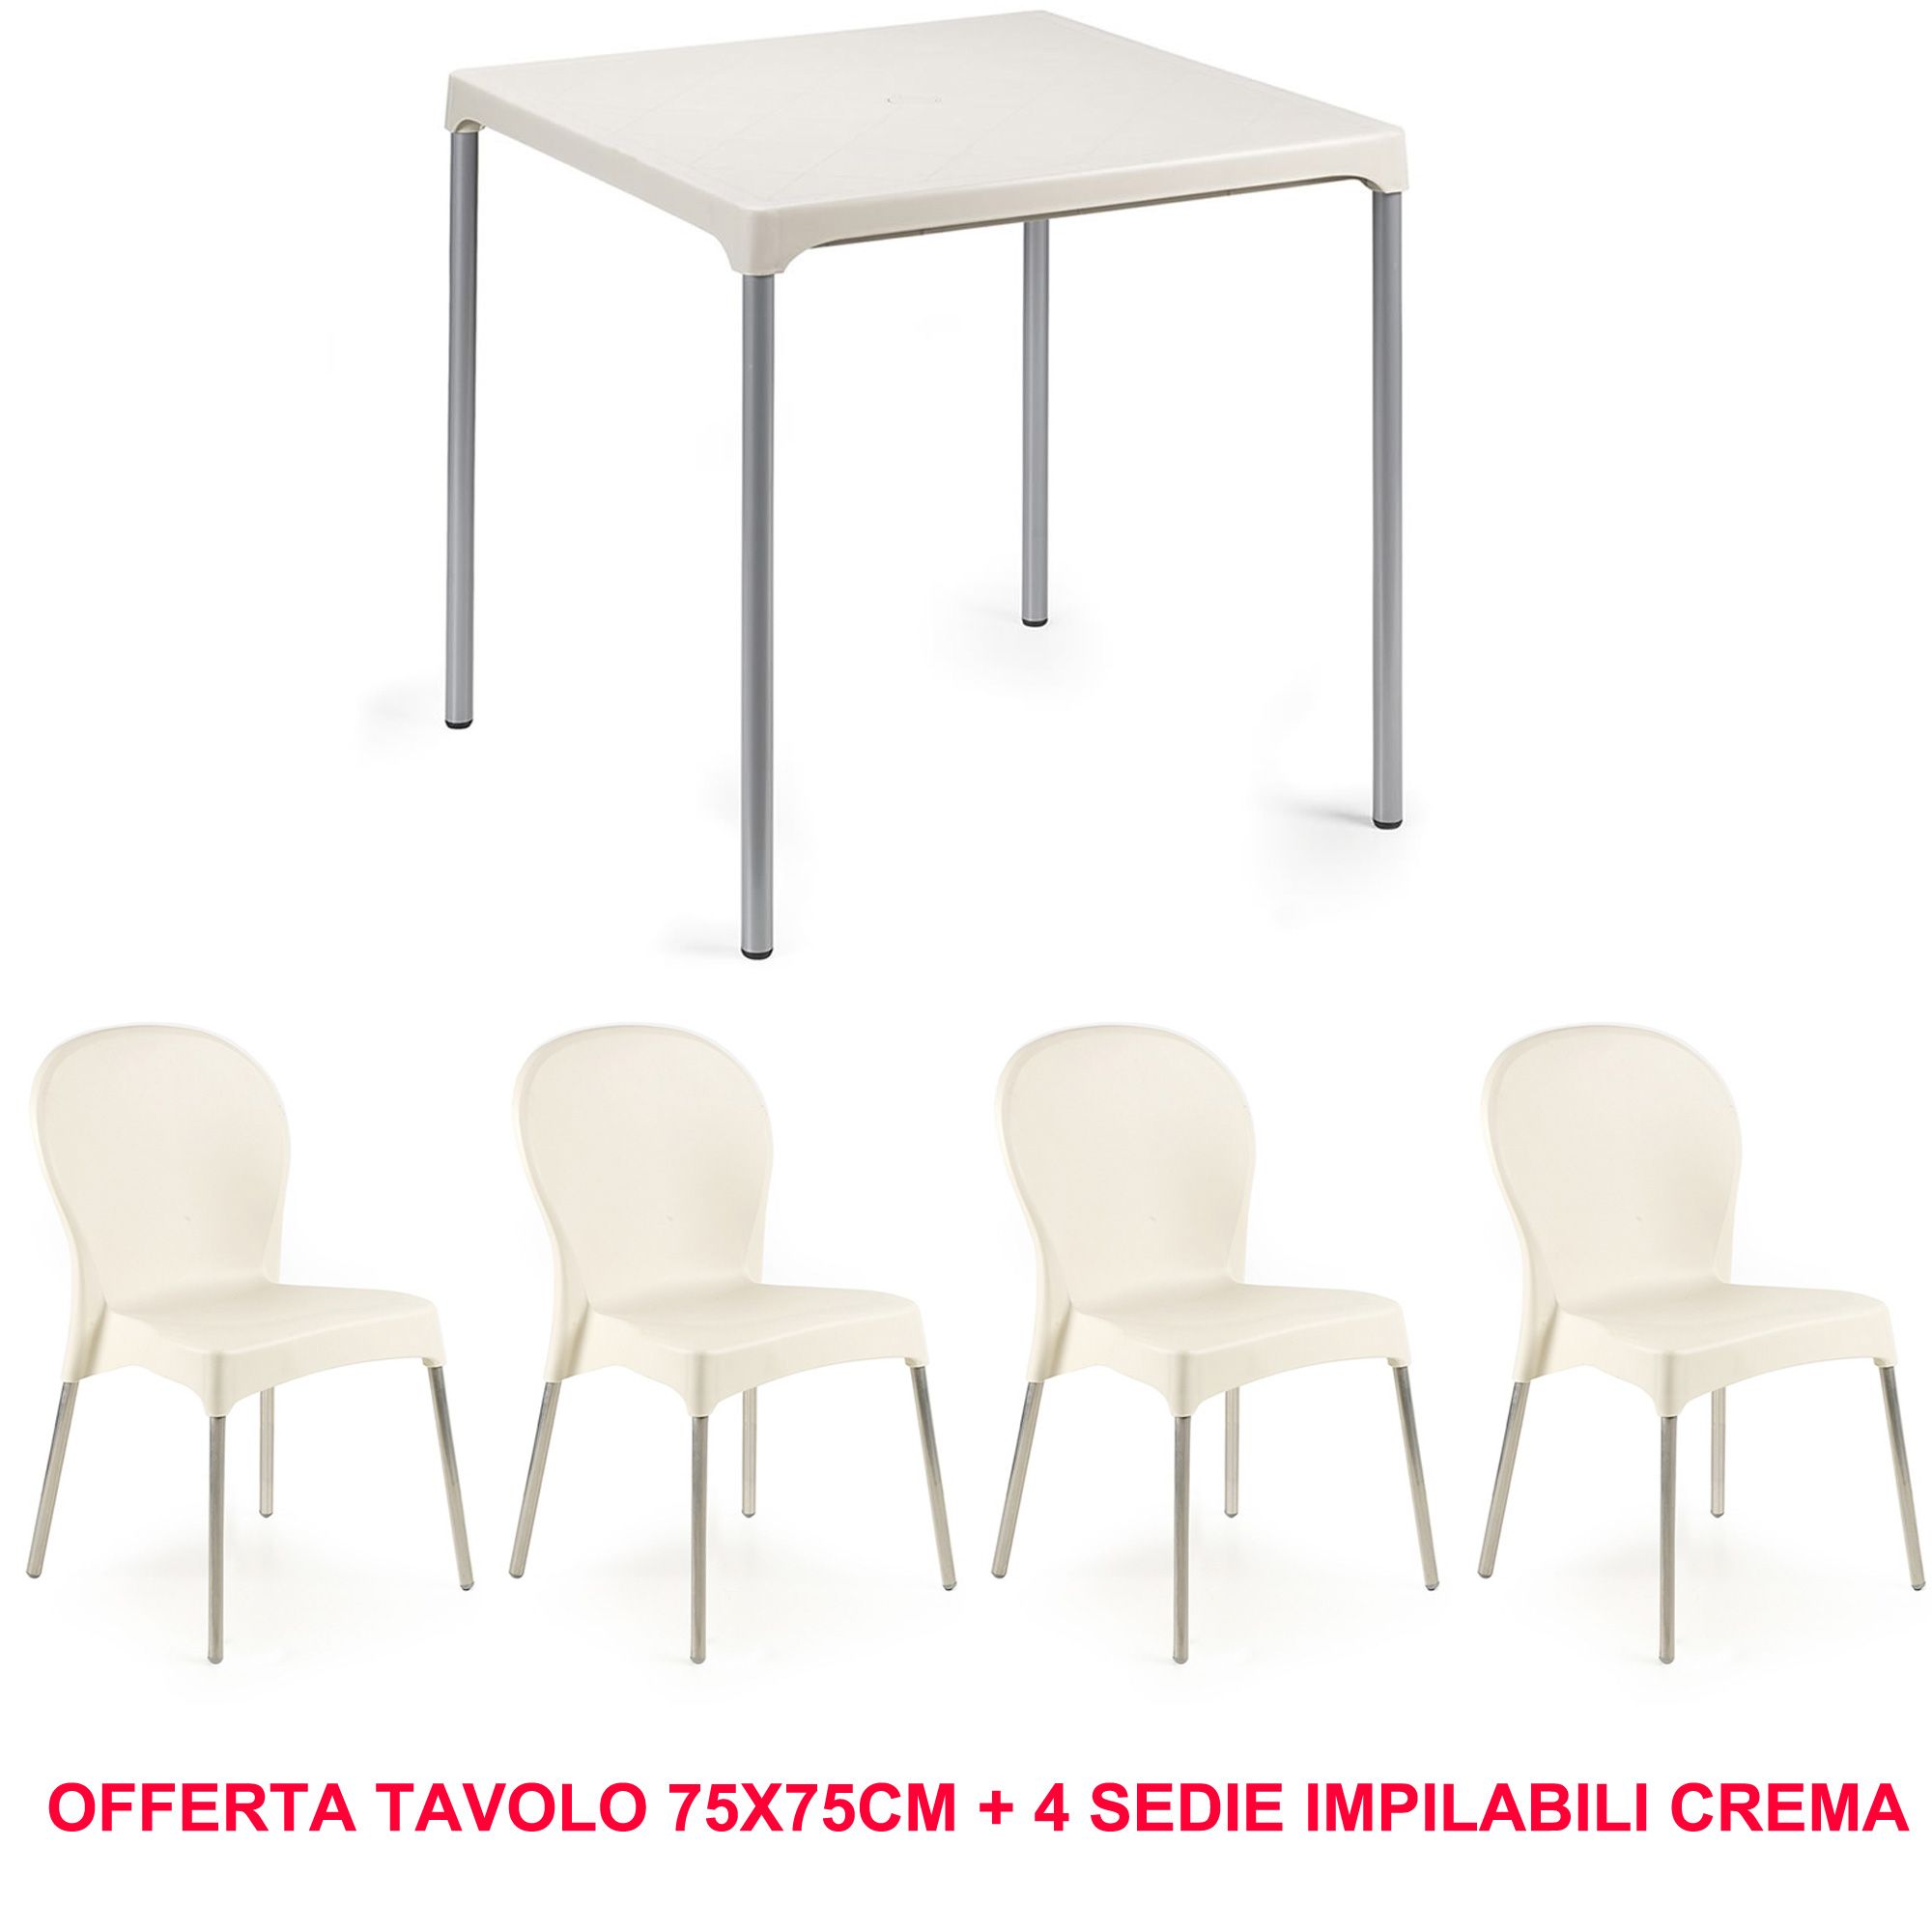 Offerta Tavolo Bar 75x75cm + 4 Sedie Impilabili Color Crema